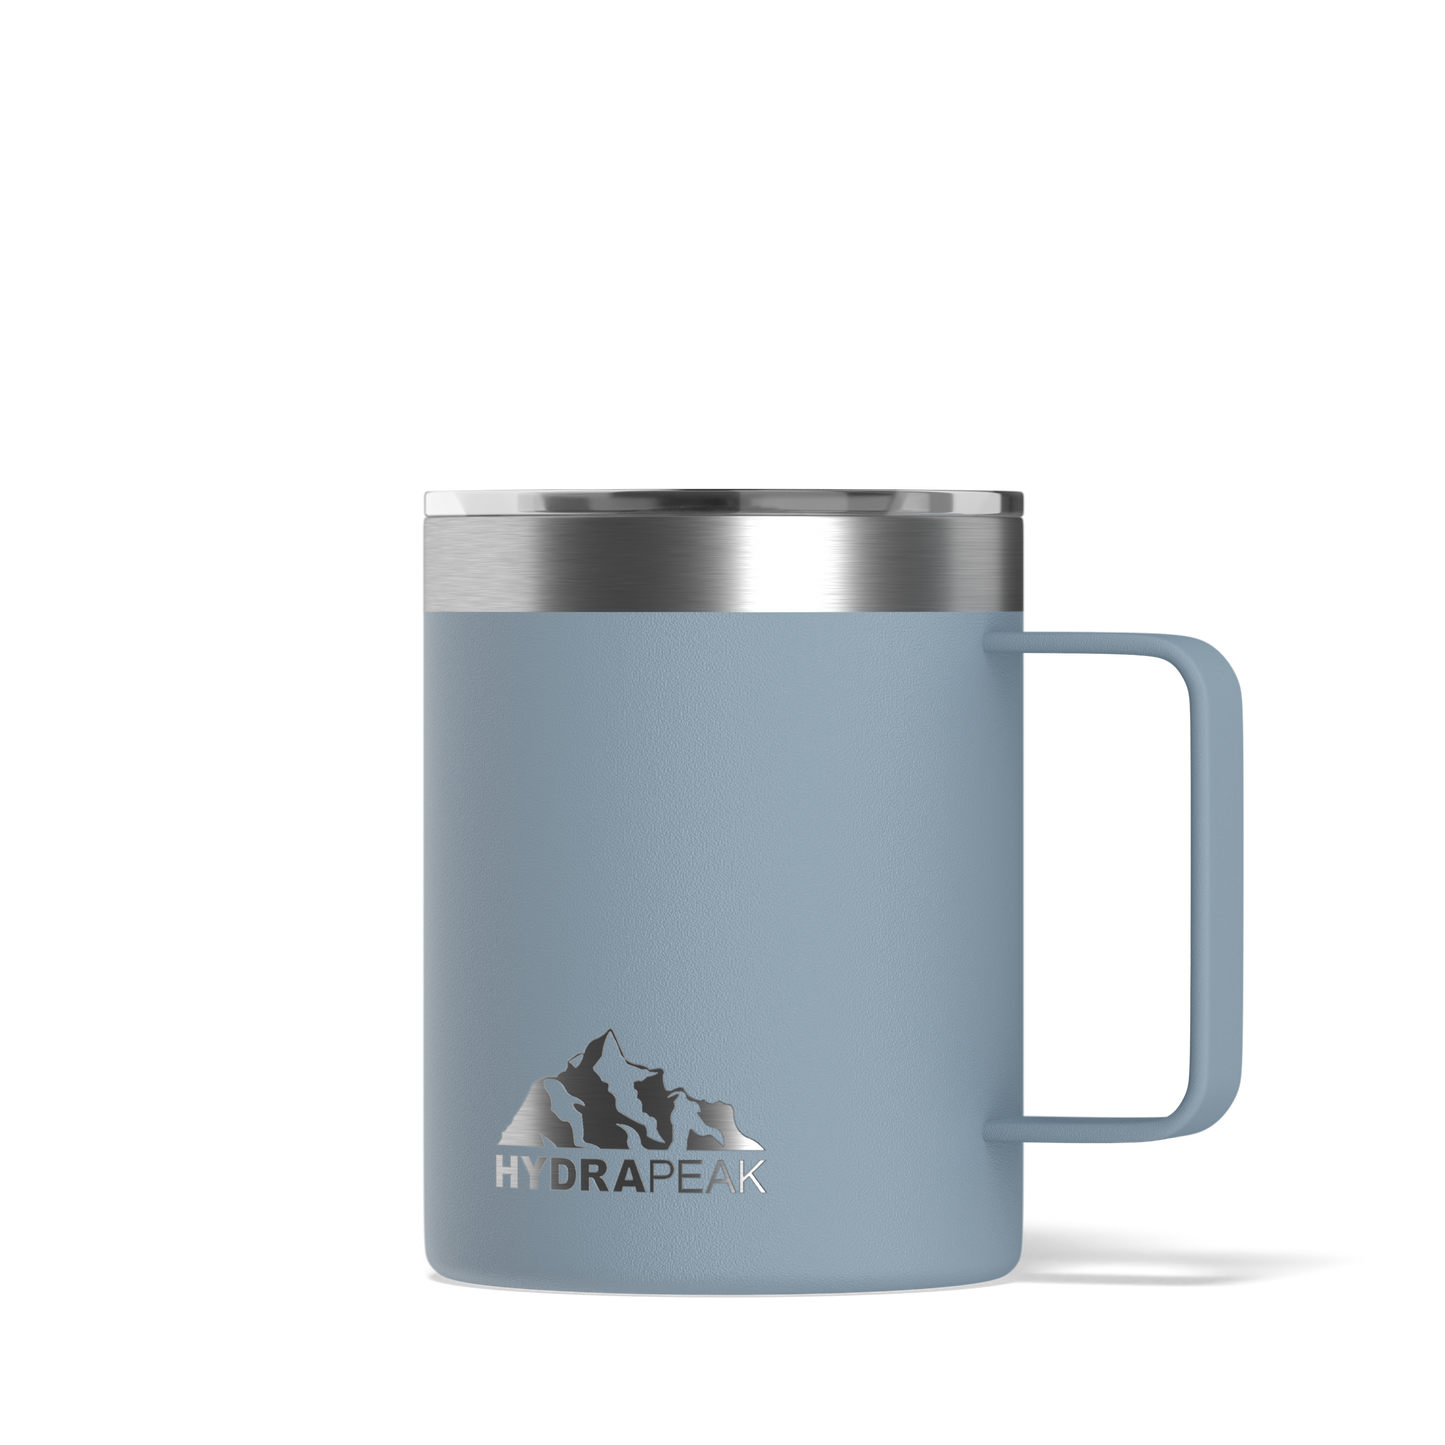 Savor 14oz Stainless Steel Insulated Coffee Mug with Handle Mug - Storm